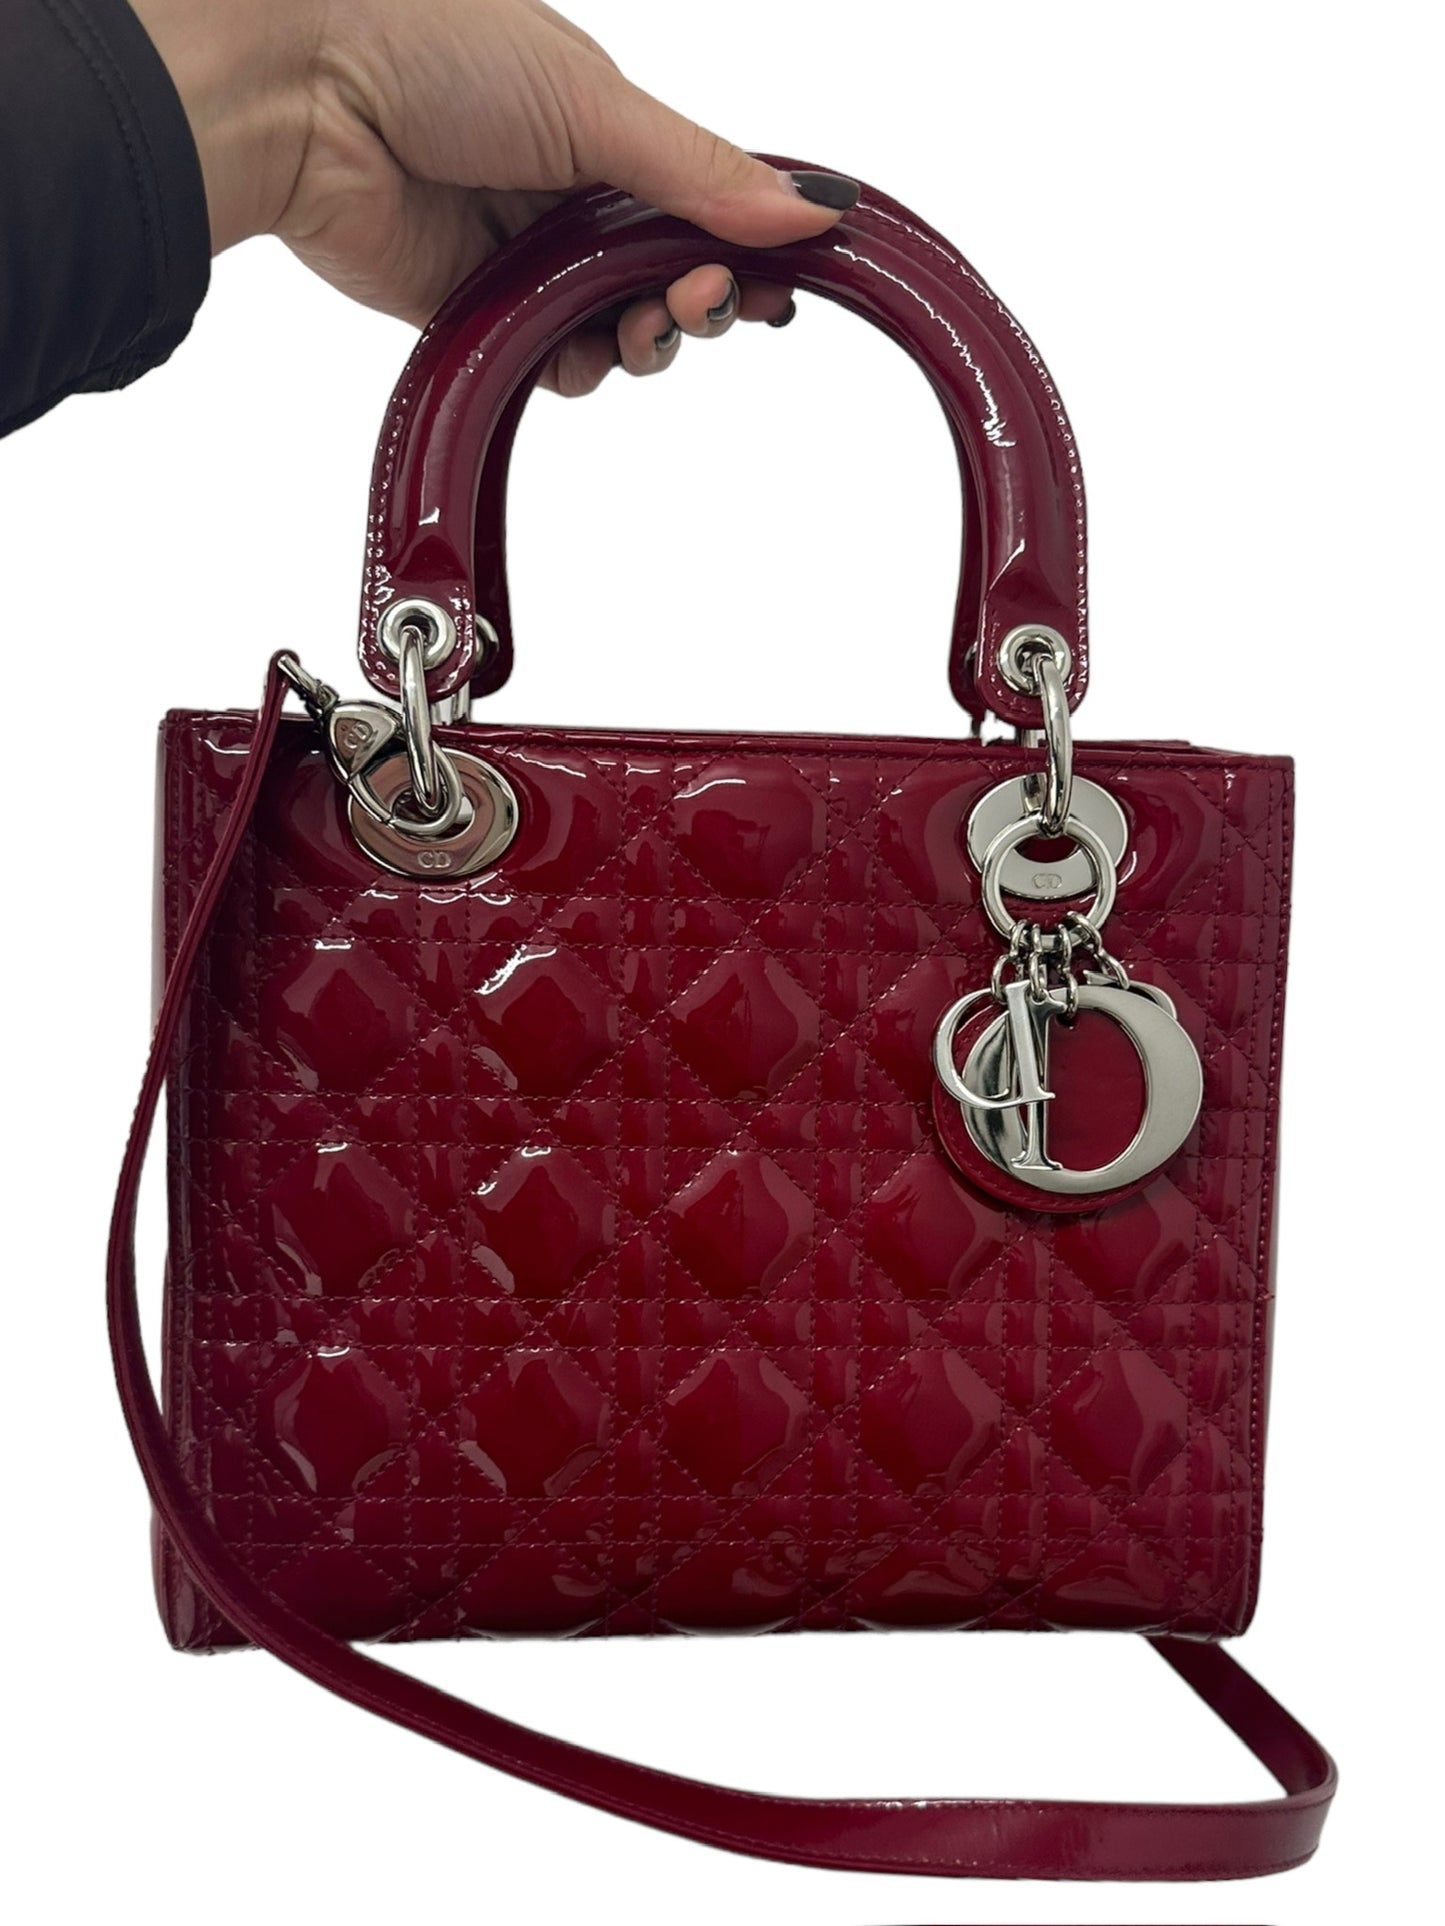 DIOR - Red Patent Lady Dior Medium